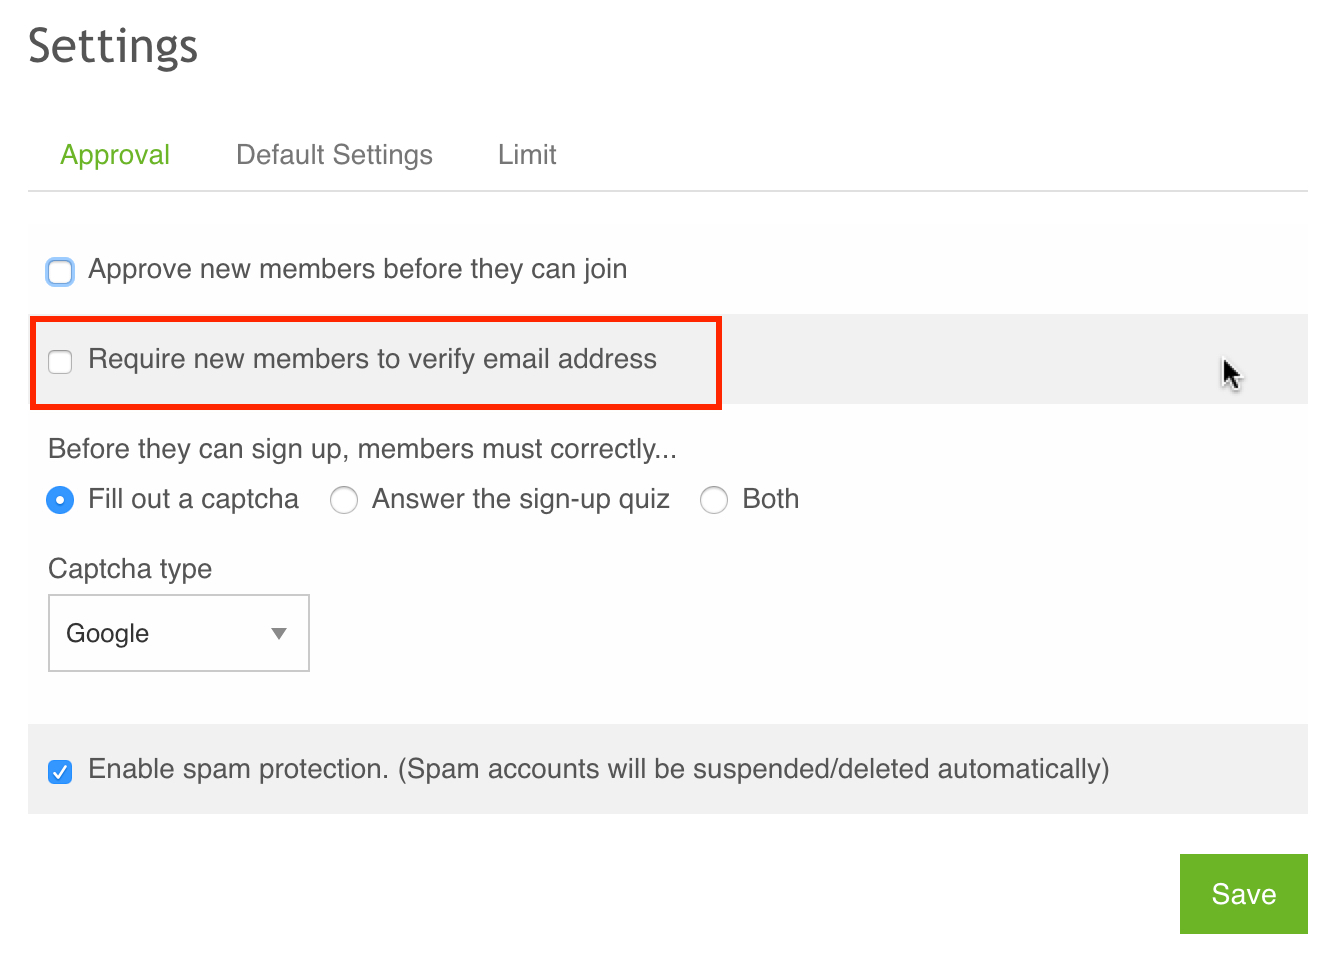 verify email address reddit